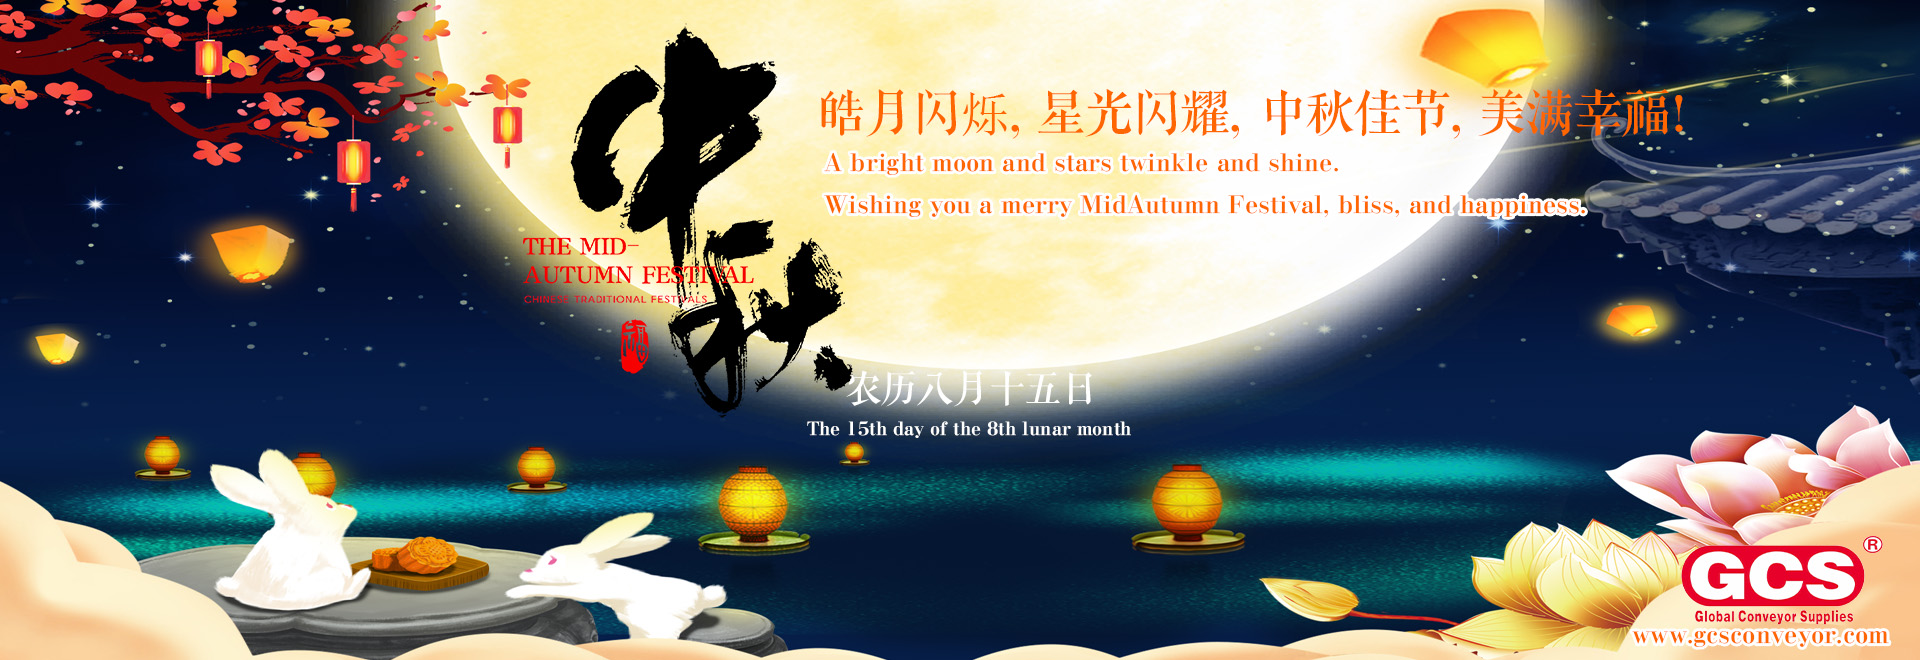 ჩინური ტრადიციული ფესტივალები - შუა შემოდგომის ფესტივალის სადღესასწაულო ცნობა GCS-ისთვის